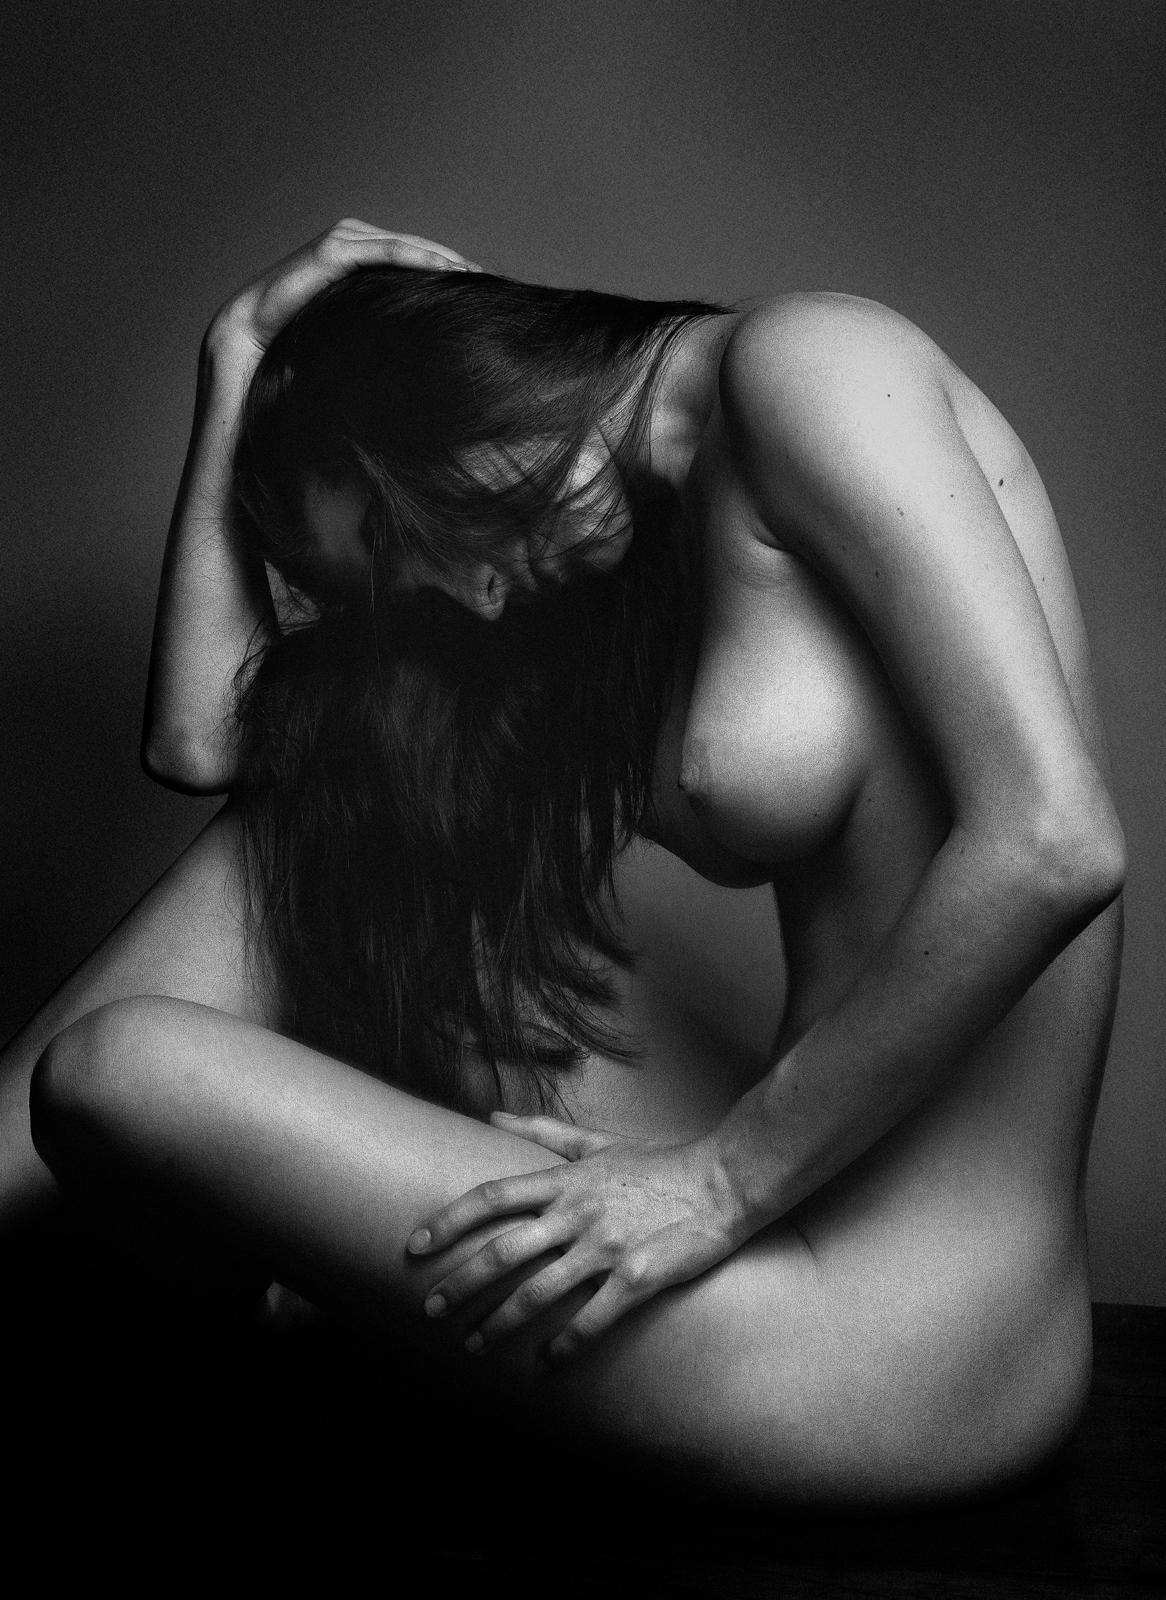 Ian Sanderson Nude Photograph – Sophie – signierter Aktdruck in limitierter Auflage, Schwarz-Weiß, Sexy Frau, Zeitgenössisch